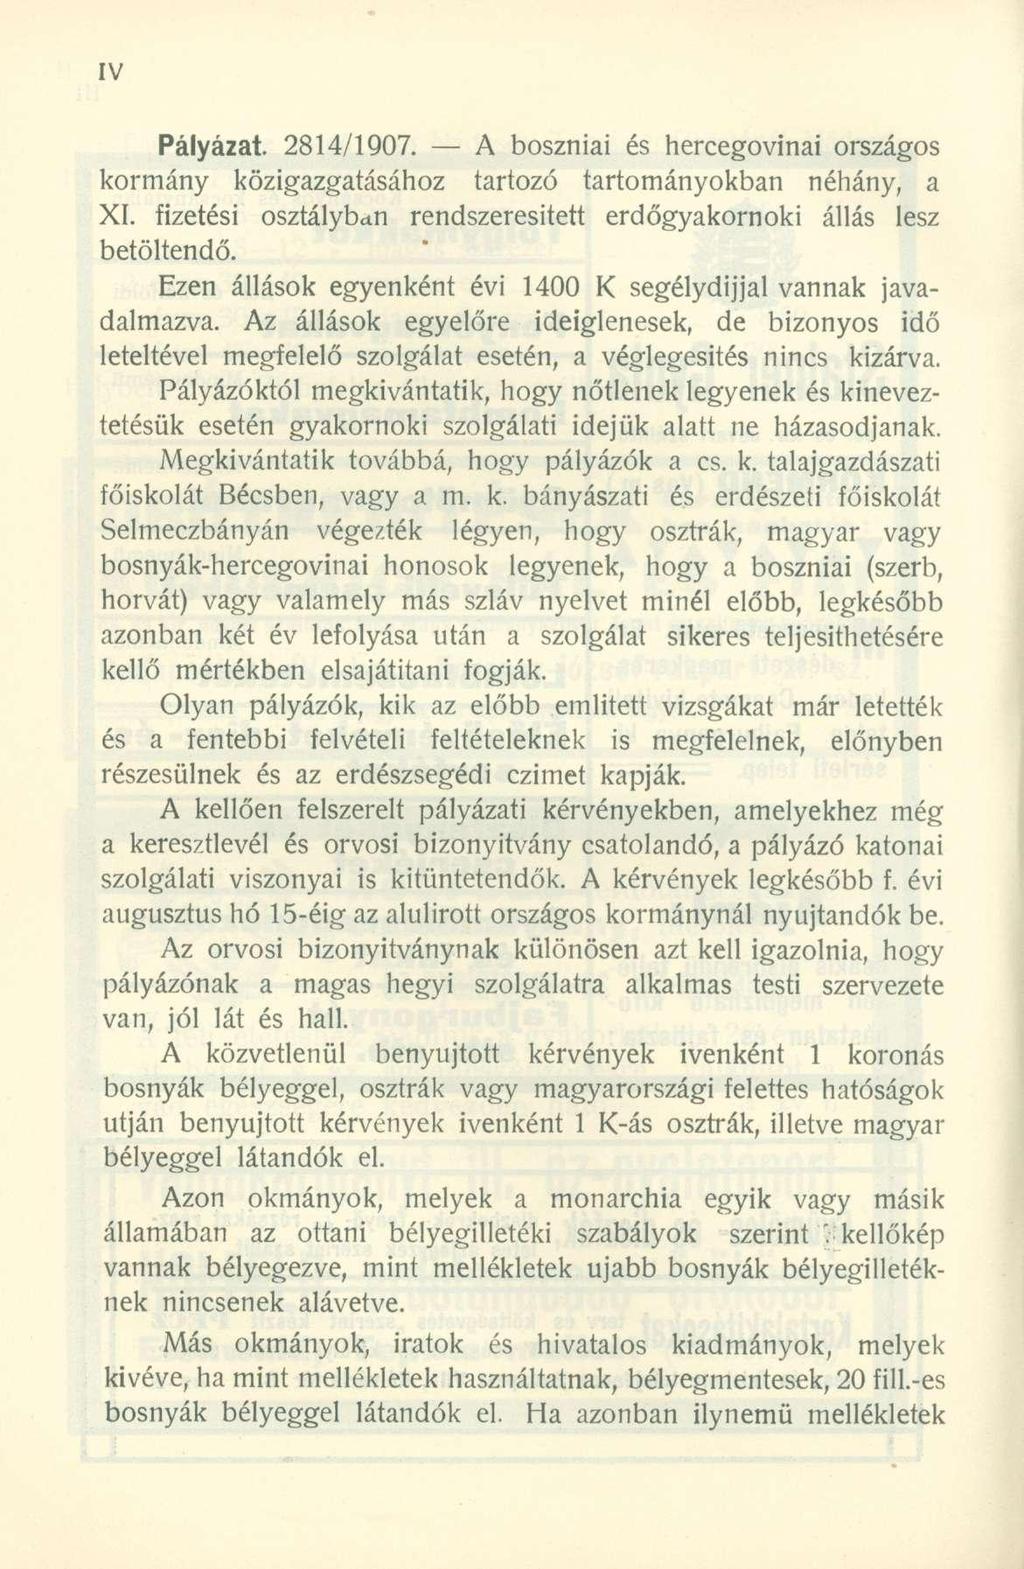 Pályázat. 2814/1907. A boszniai és hercegovinai országos kormány közigazgatásához tartozó tartományokban néhány, a XI. fizetési osztálybctn rendszeresített erdőgyakornoki állás lesz betöltendő.